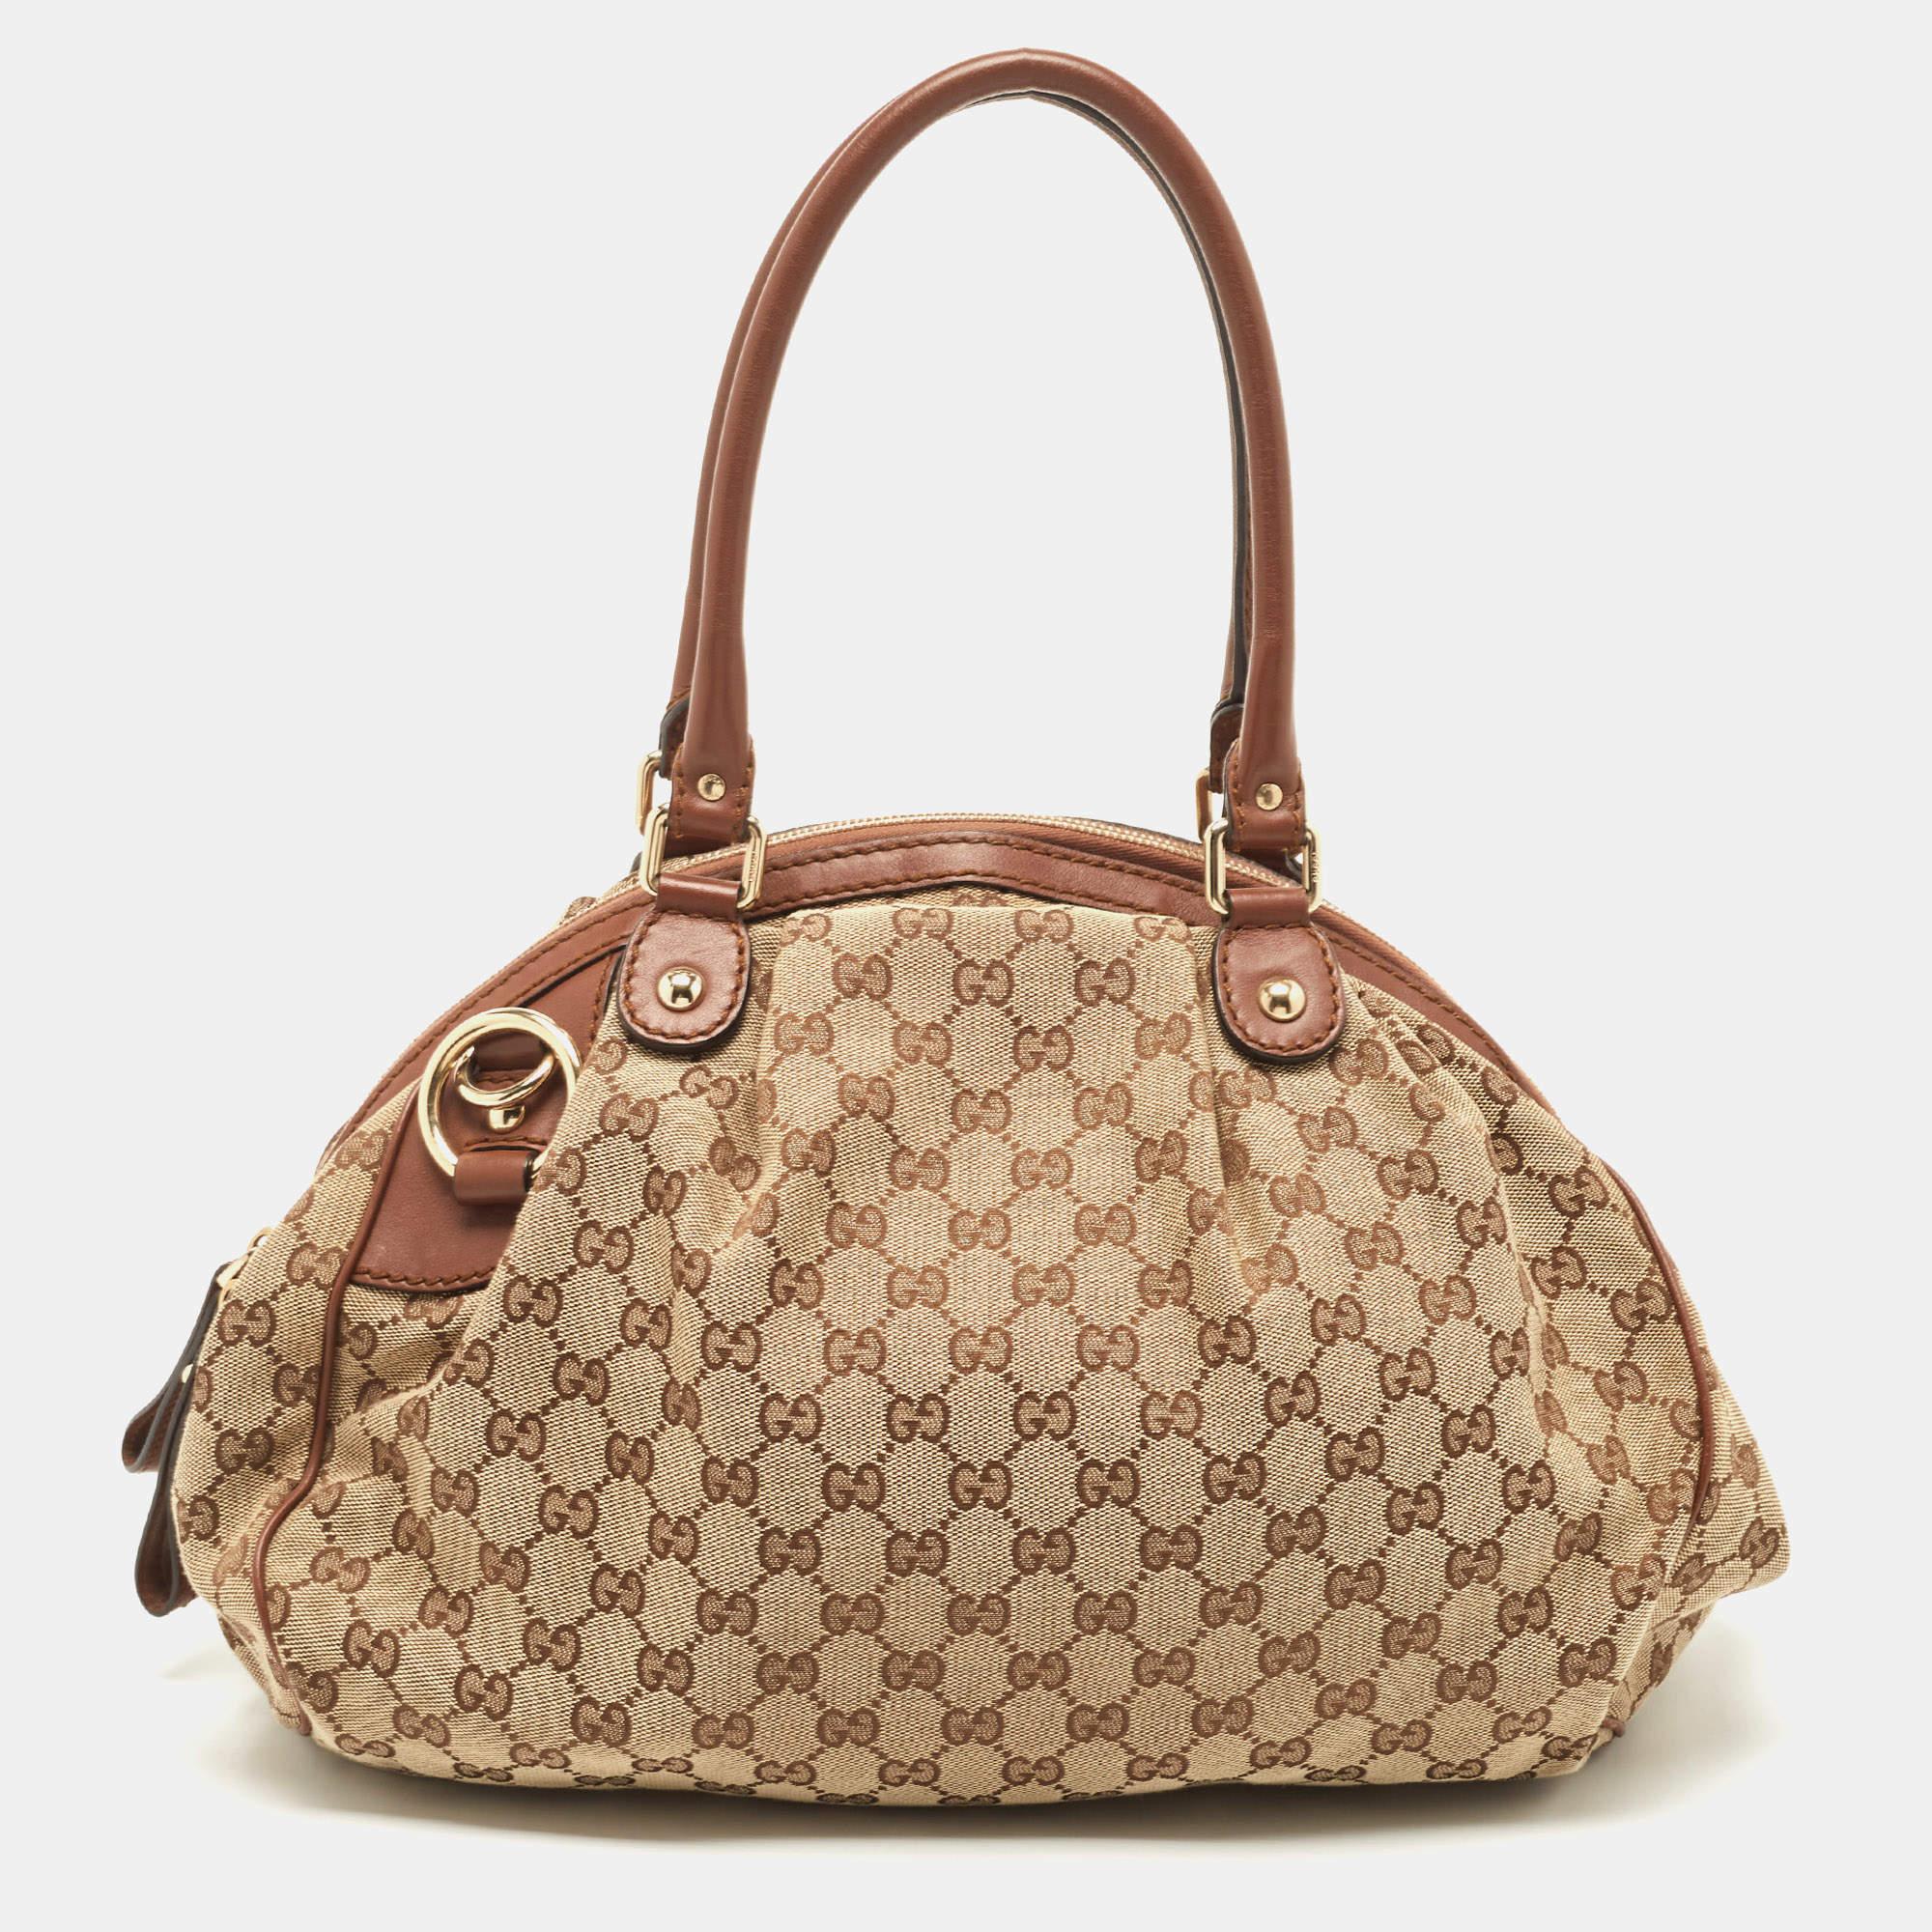 Die Sukey Boston Tasche aus dem Hause Gucci ist ein Klassiker. Die Tasche ist aus charakteristischem GG Canvas gefertigt und mit Lederbesätzen versehen. Sie ist mit einem geräumigen Innenraum aus Stoff und zwei Griffen ausgestattet.

